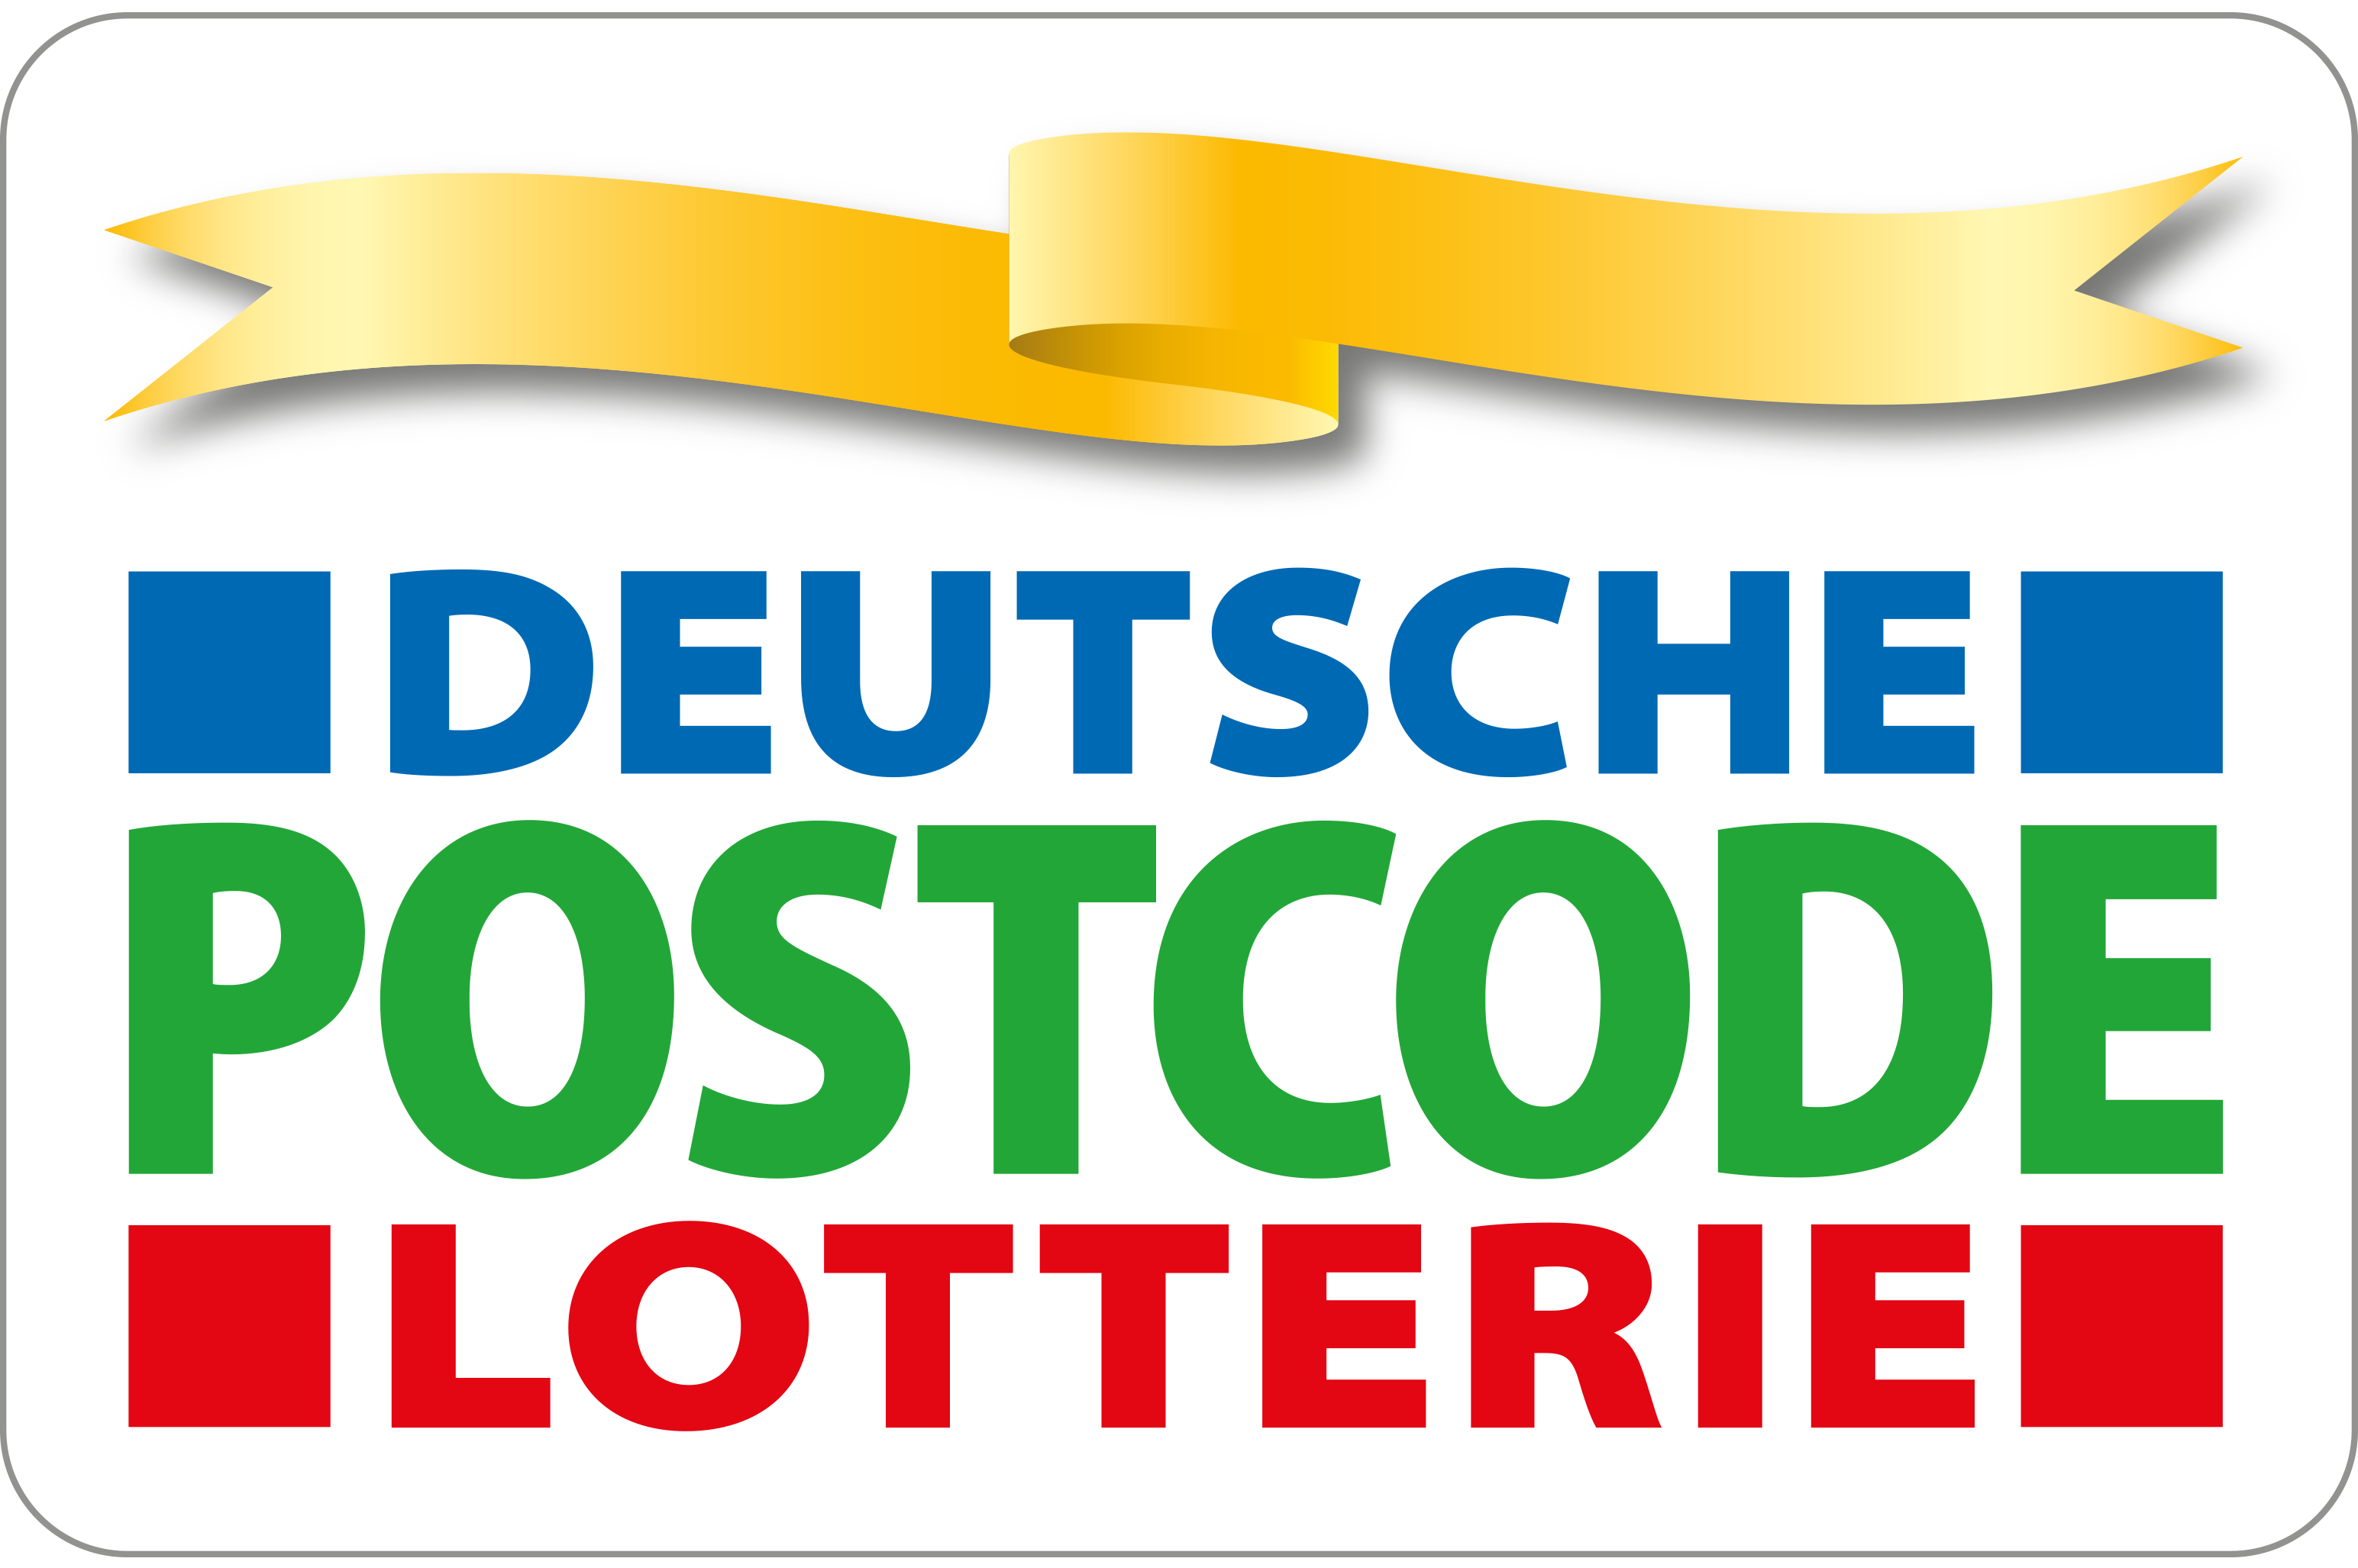 Gefördert durch die "Deutsche Postcode Lotterie"